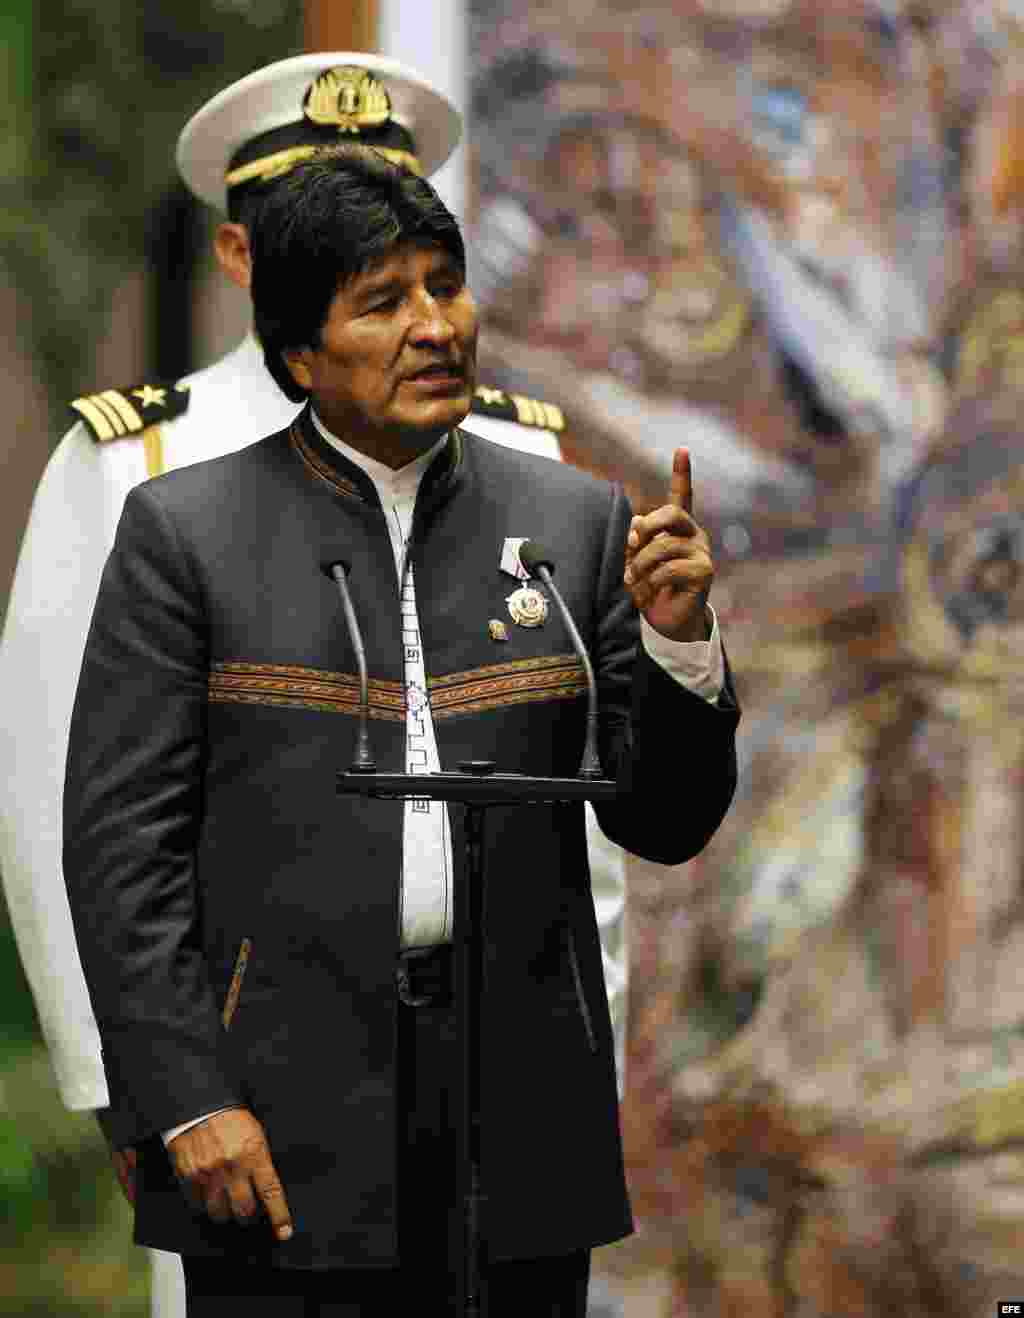  Evo Morales da un discurso tras su condecoración con la orden José Martí, la más alta distinción que otorga el Gobierno cubano.